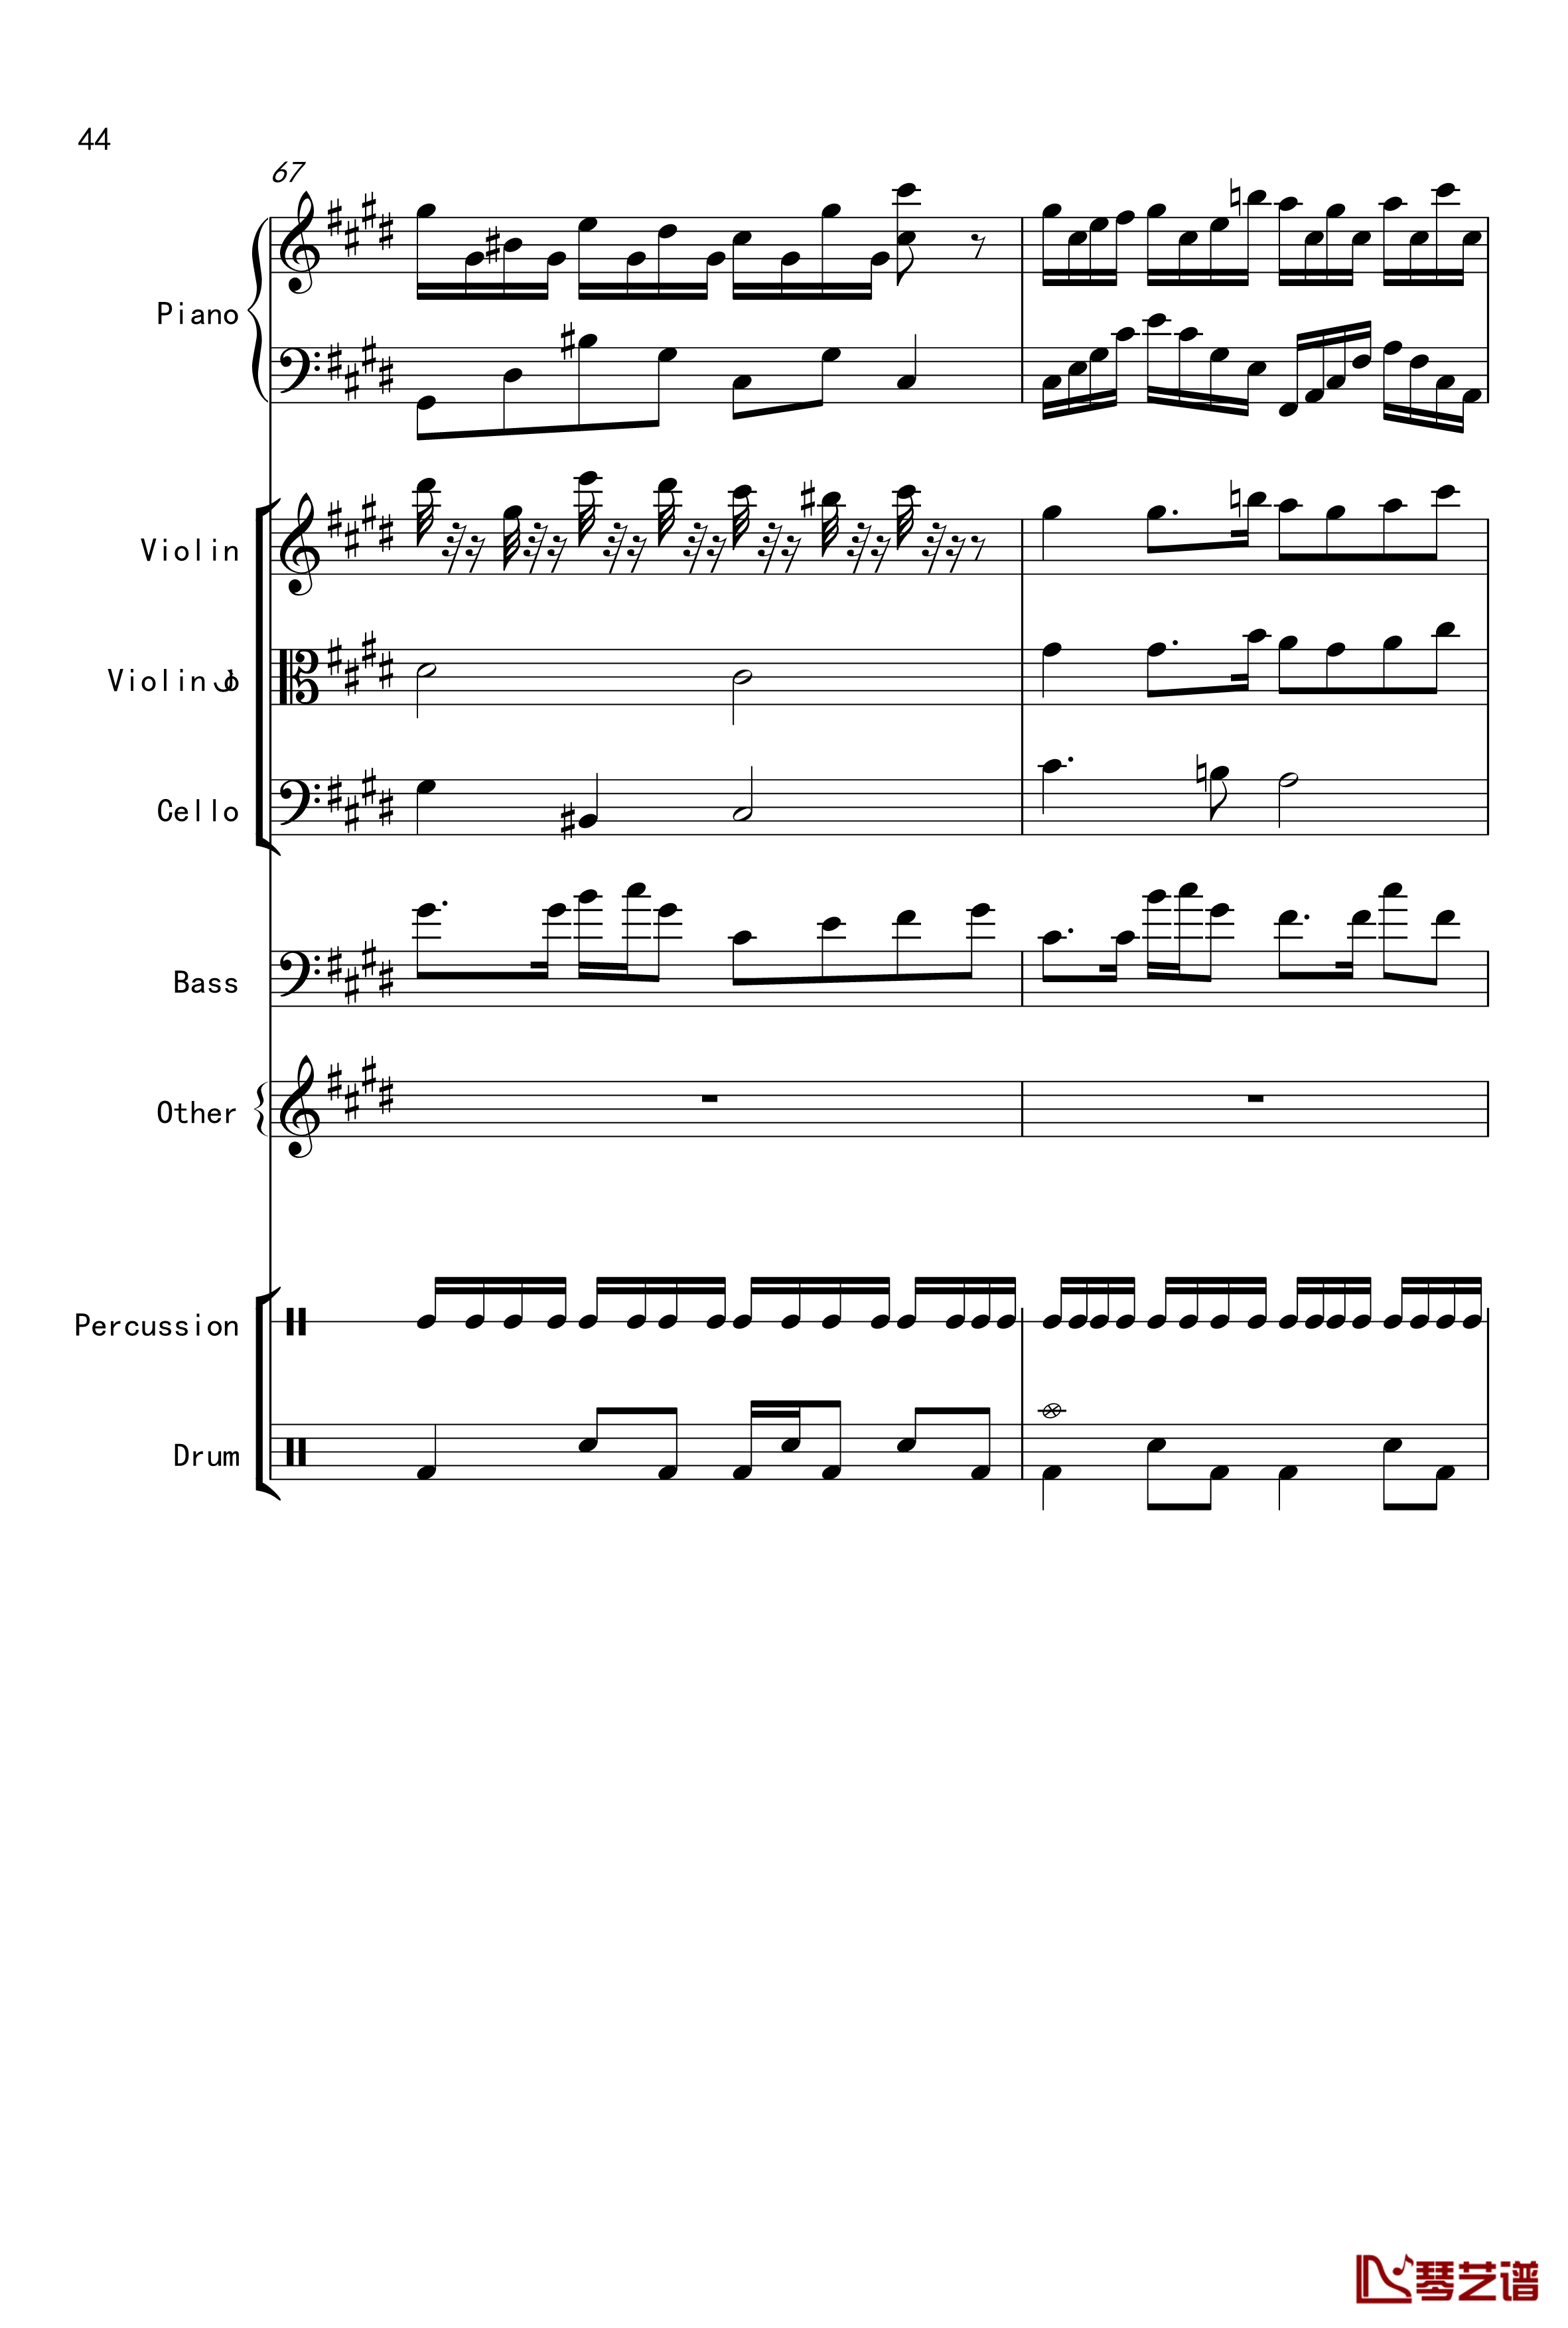 克罗地亚舞曲钢琴谱-Croatian Rhapsody-马克西姆-Maksim·Mrvica44